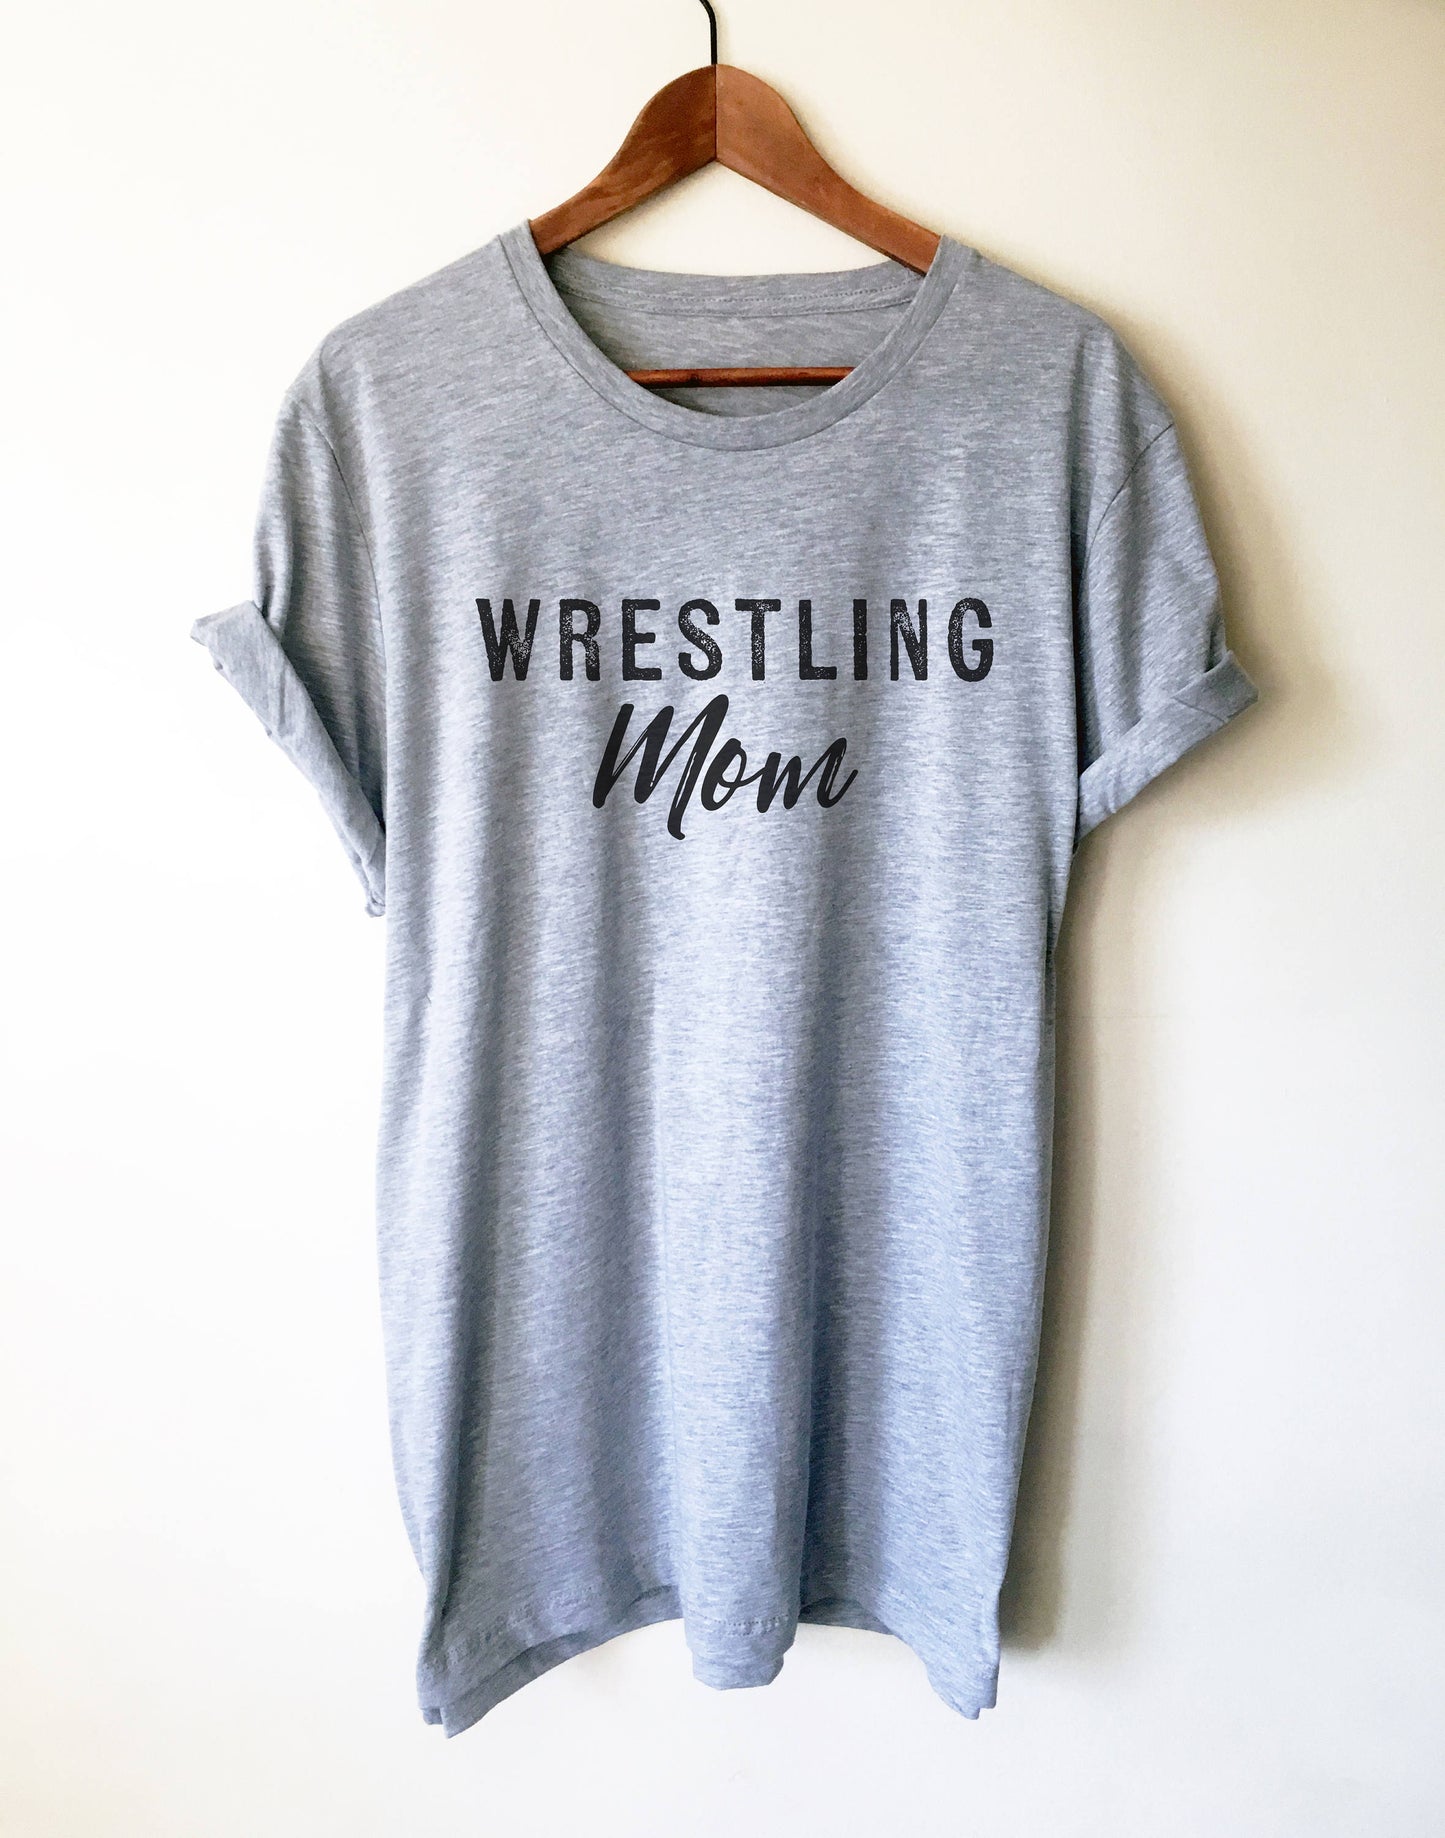 Wrestling Mom Unisex Shirt - Wrestling Mom, Wrestling, Wrestler, Wrestling Fan, Wrestling T-Shirt, Wrestlers Mom Shirt, WrestlingMom